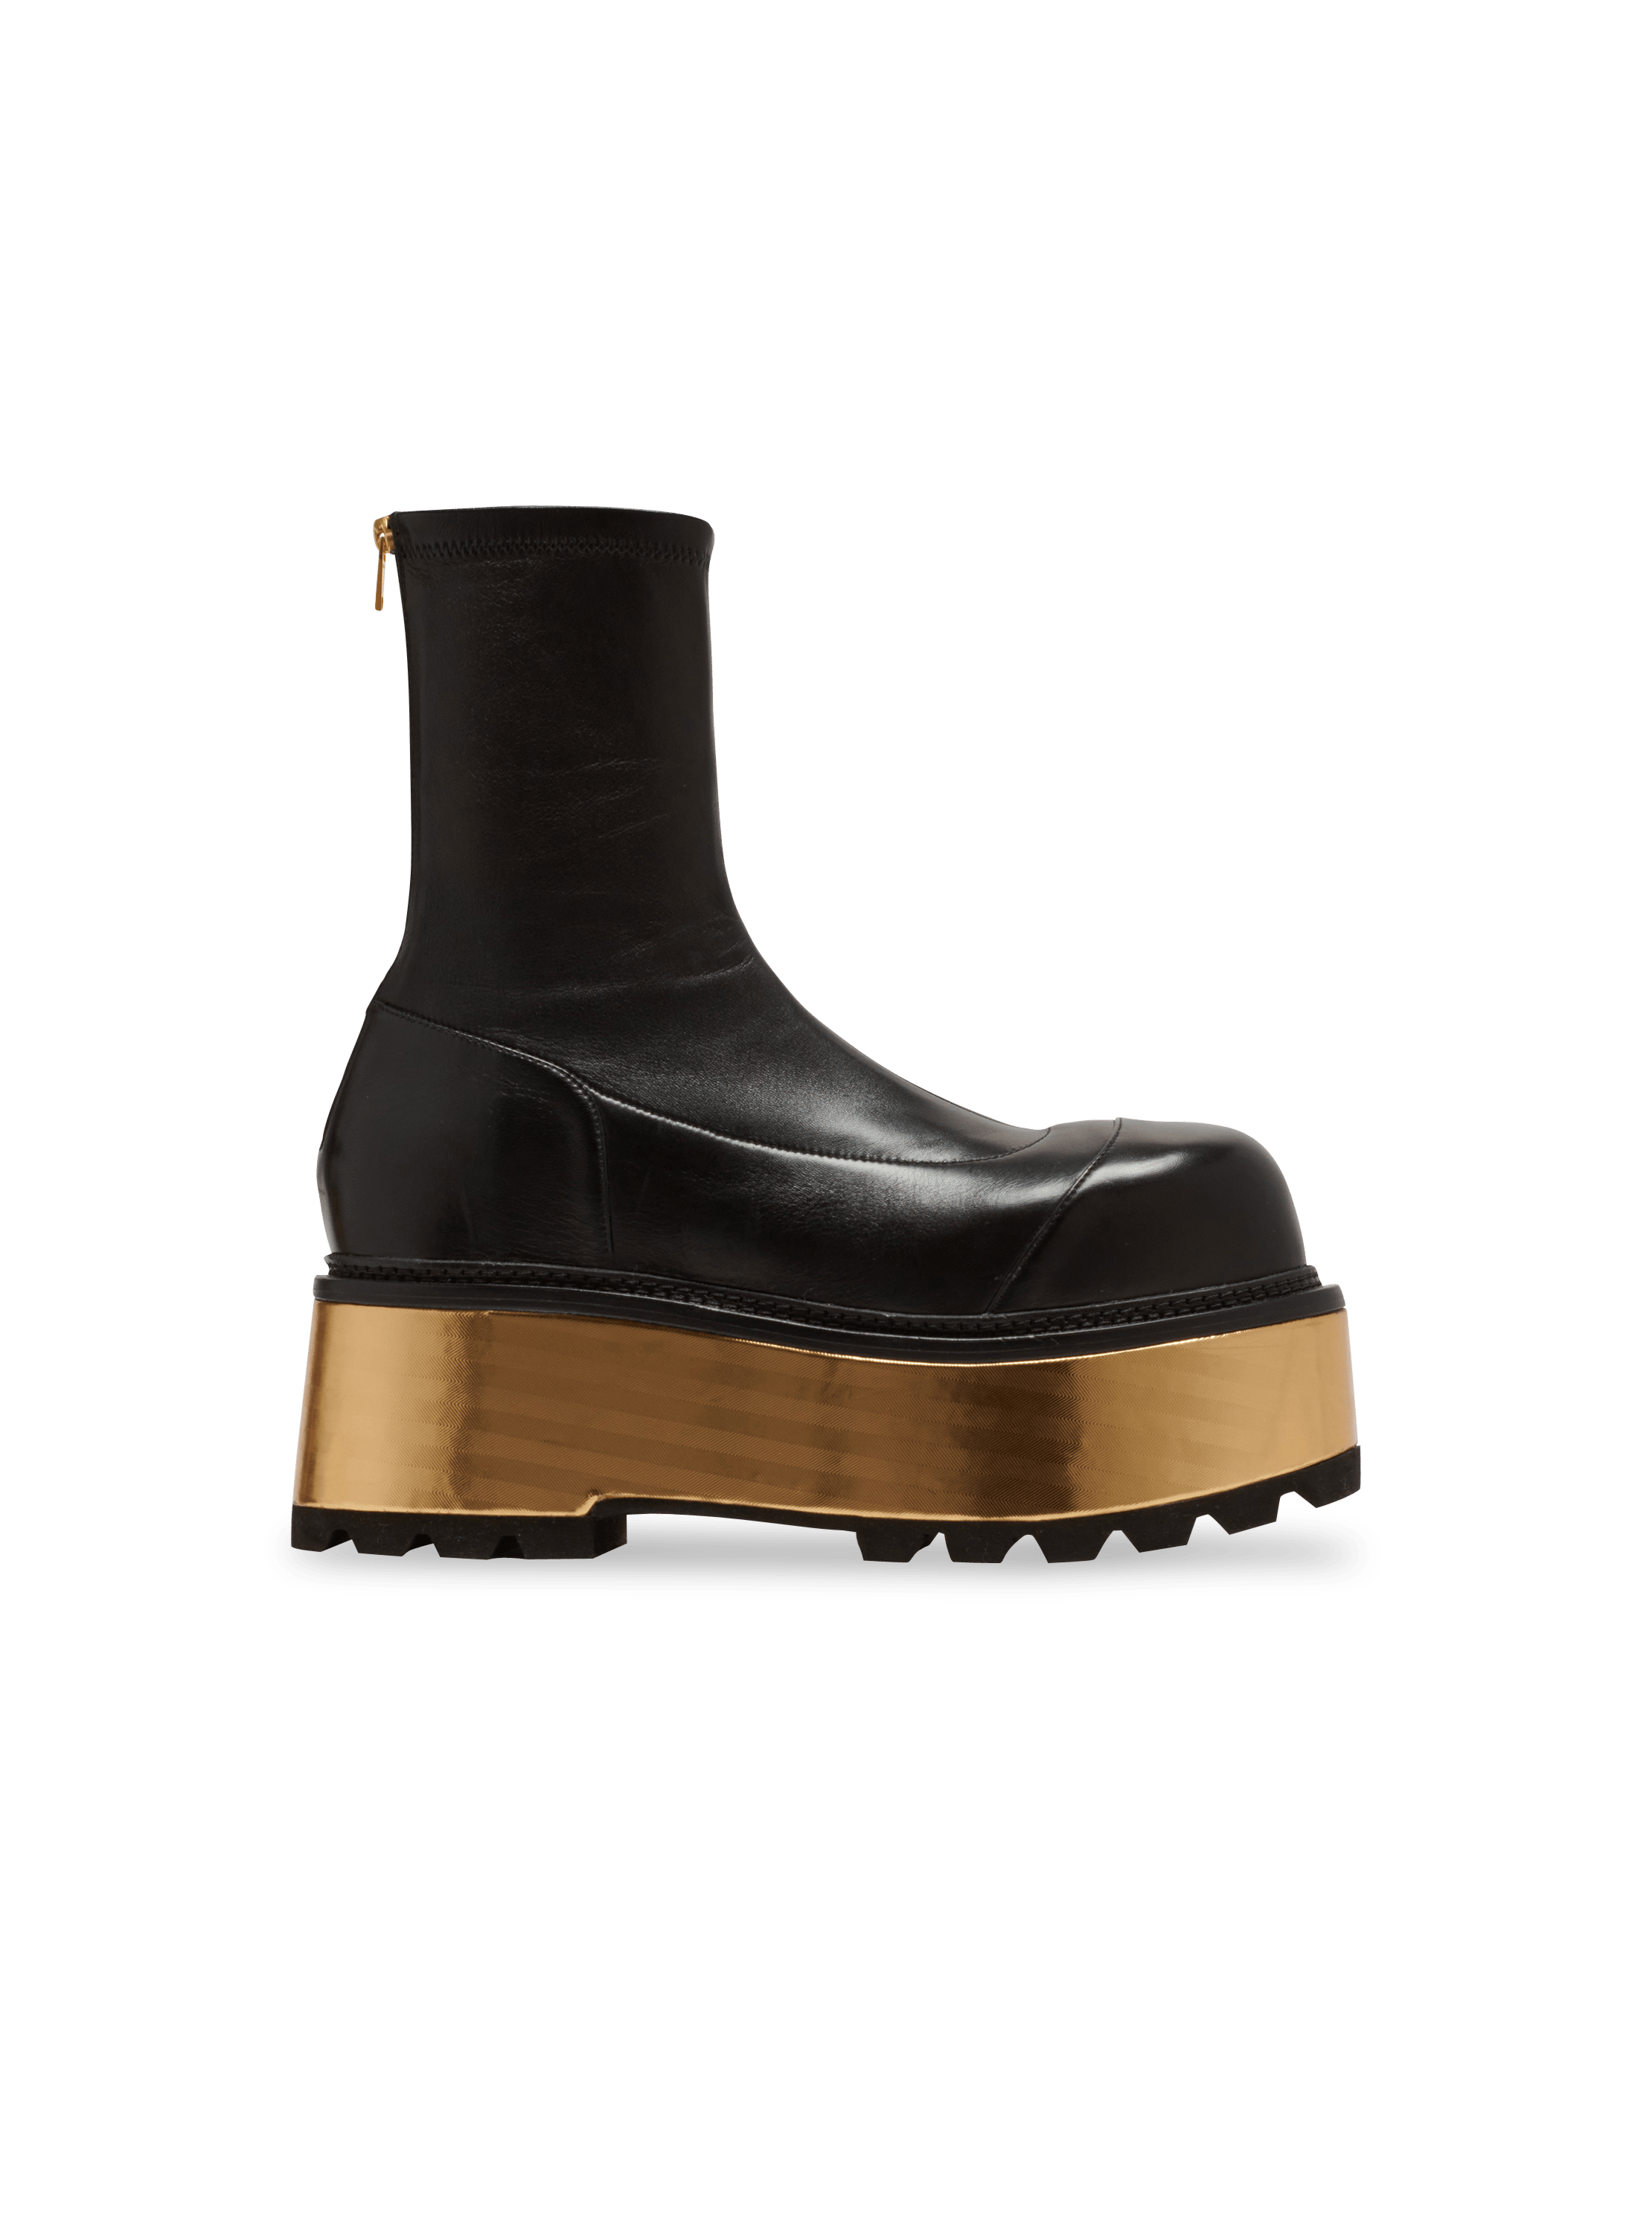 Leather platform boots, black, hi-res